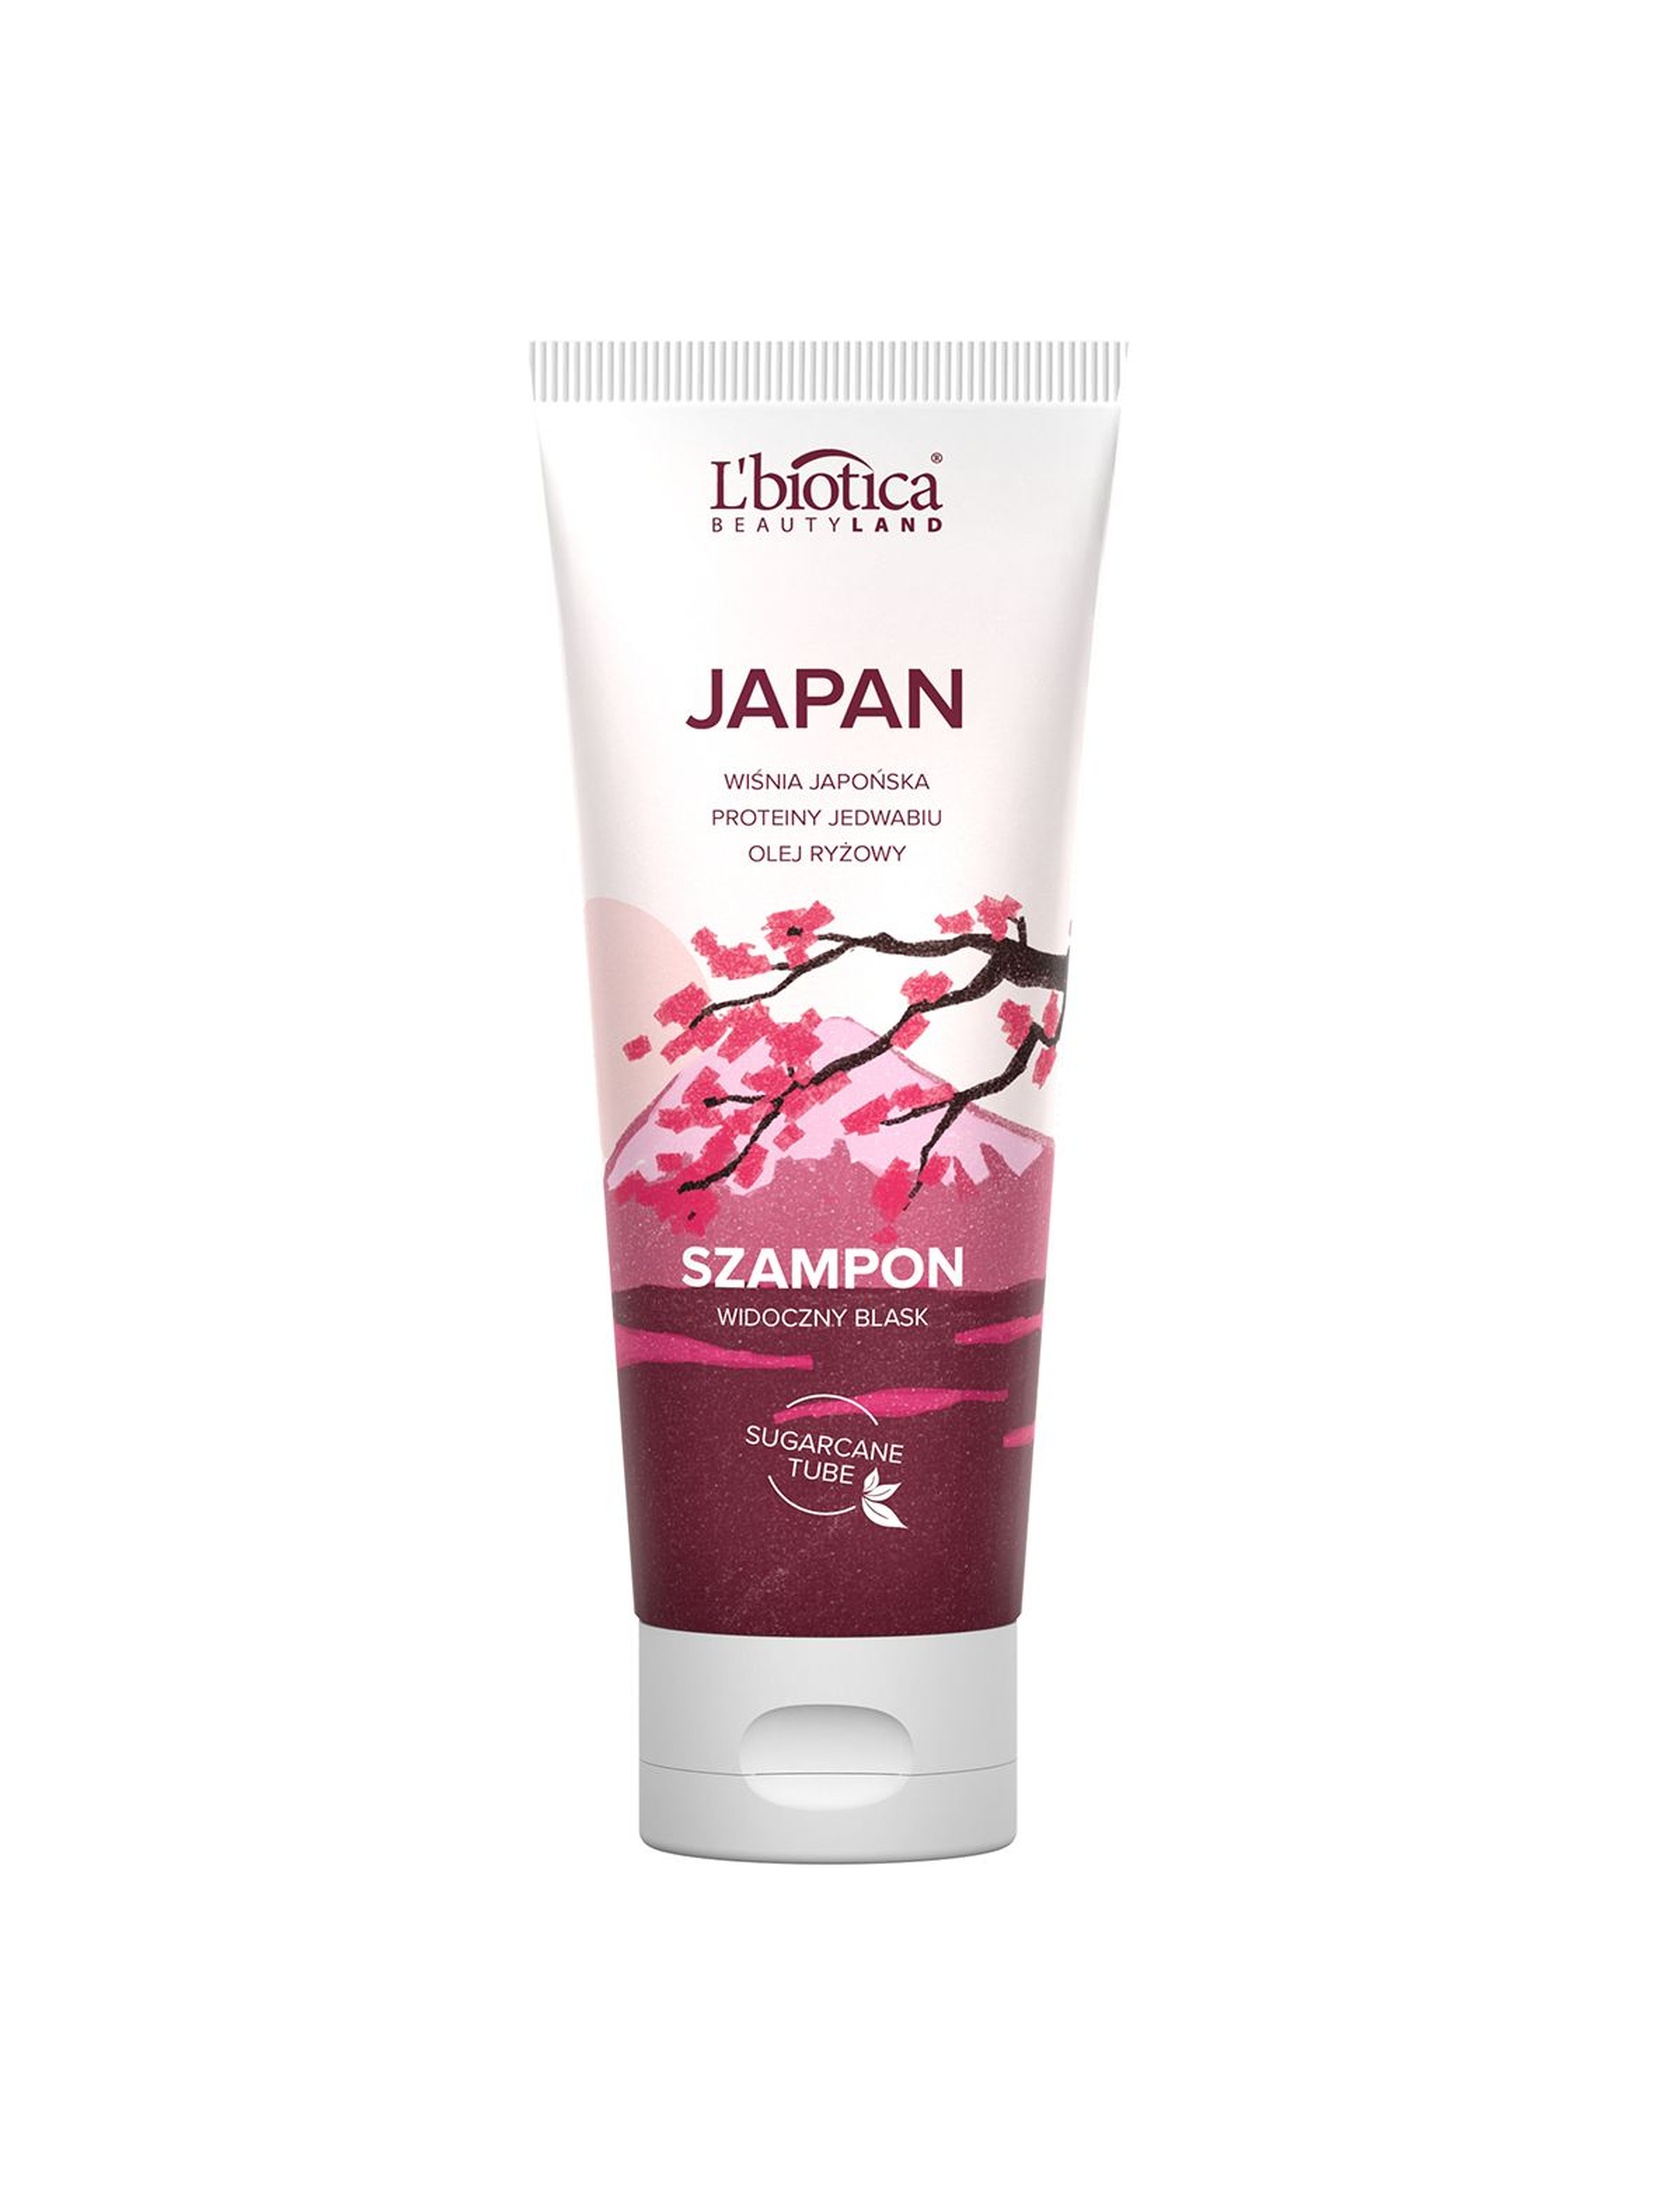 L'biotica Beauty Land Japan szampon do włosów 200 ml